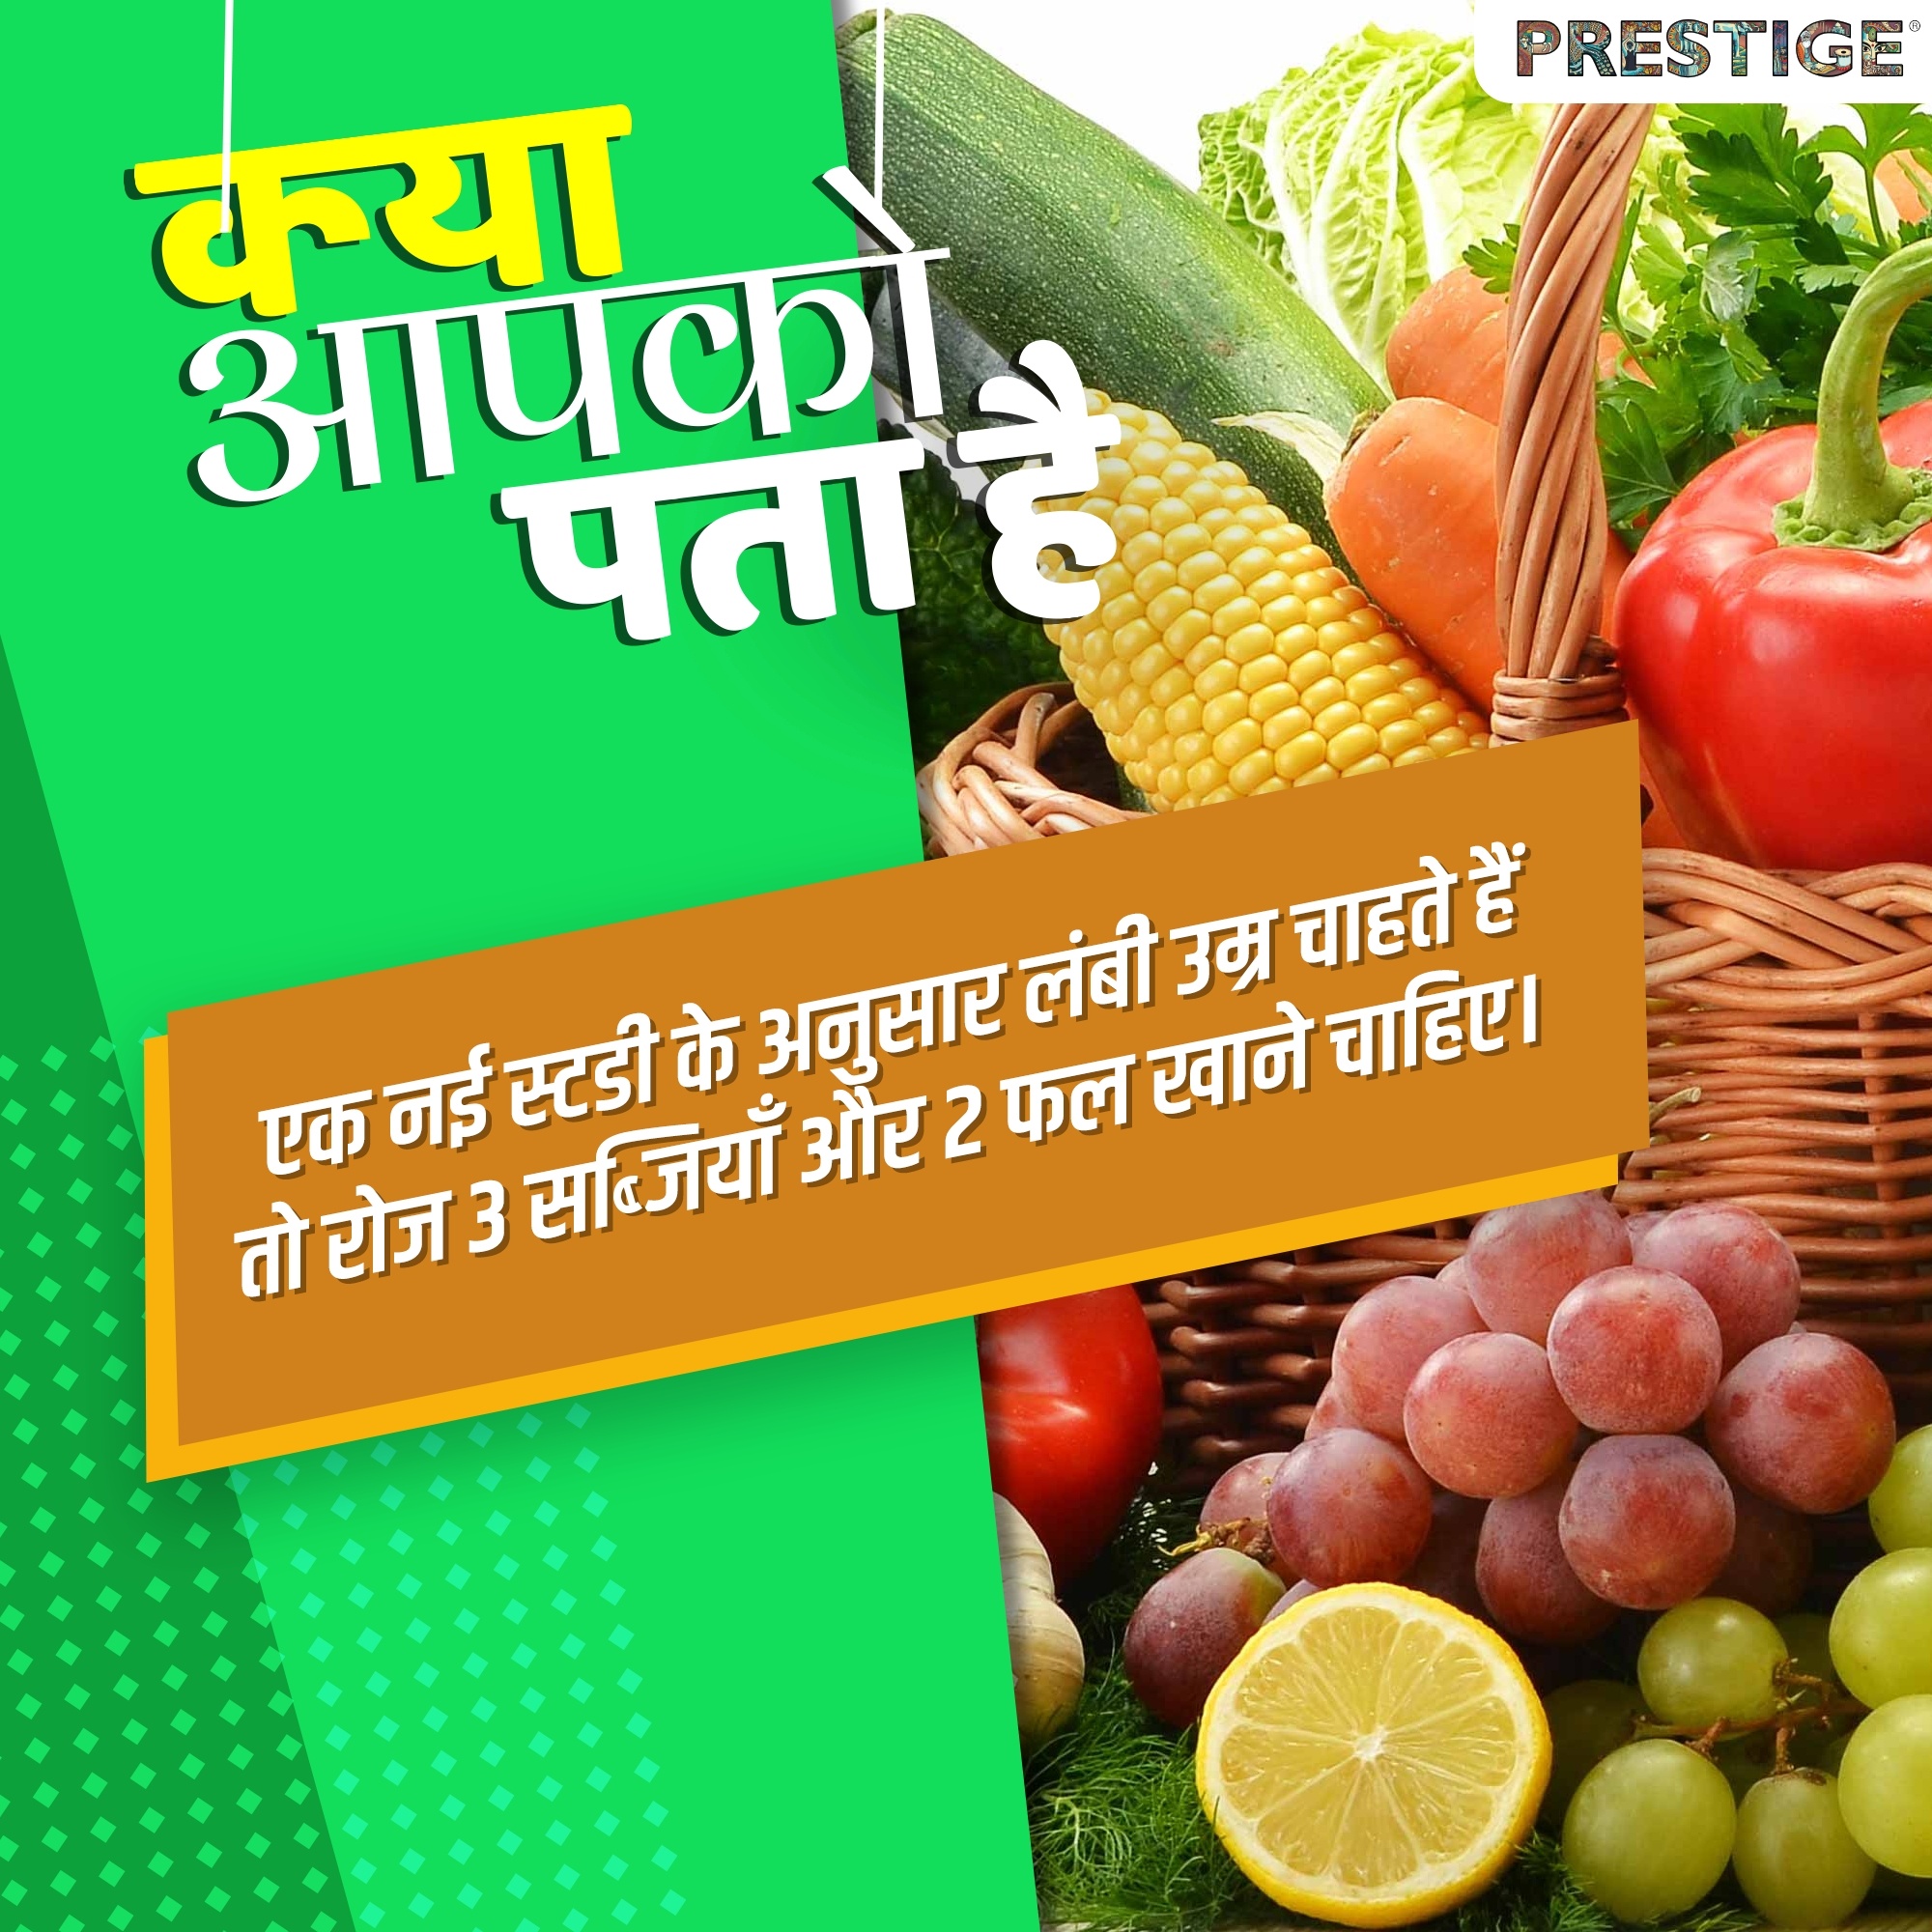 फलों और सब्जियों का सही मात्रा में सेवन करना शरीर के लिए बहुत जरूरी है।